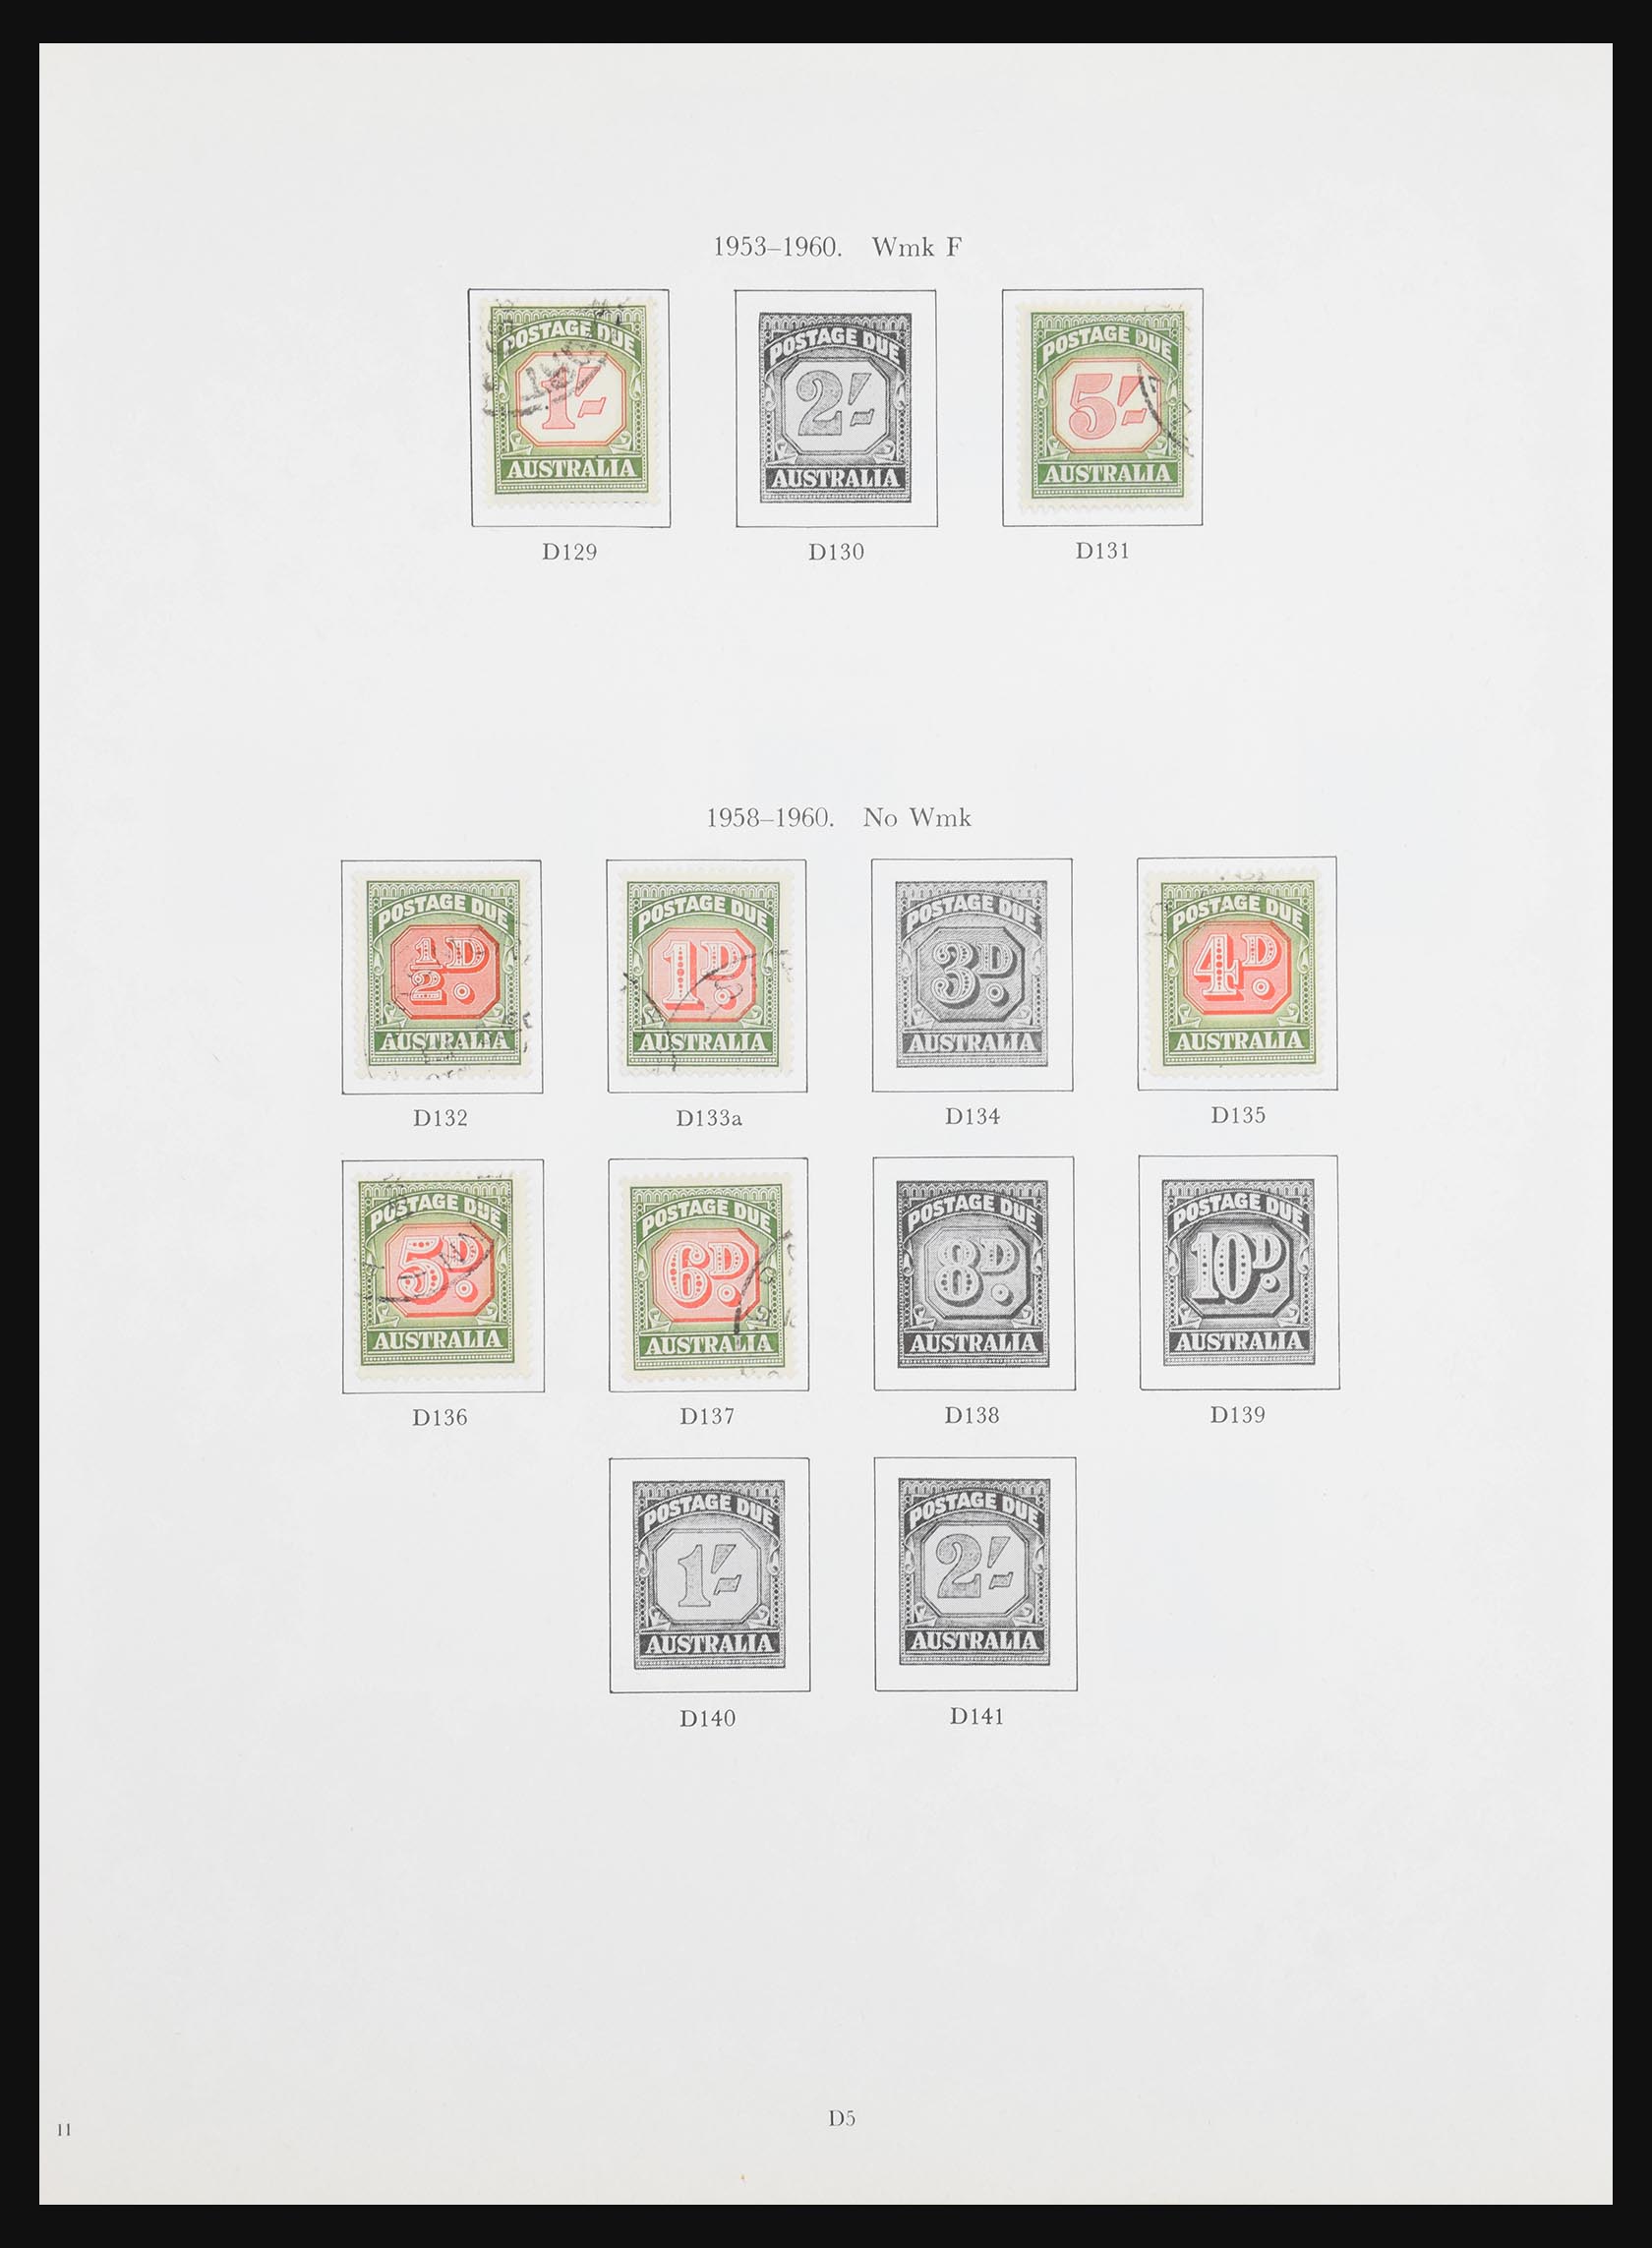 30963 110 - 30963 Australia 1913-1990.